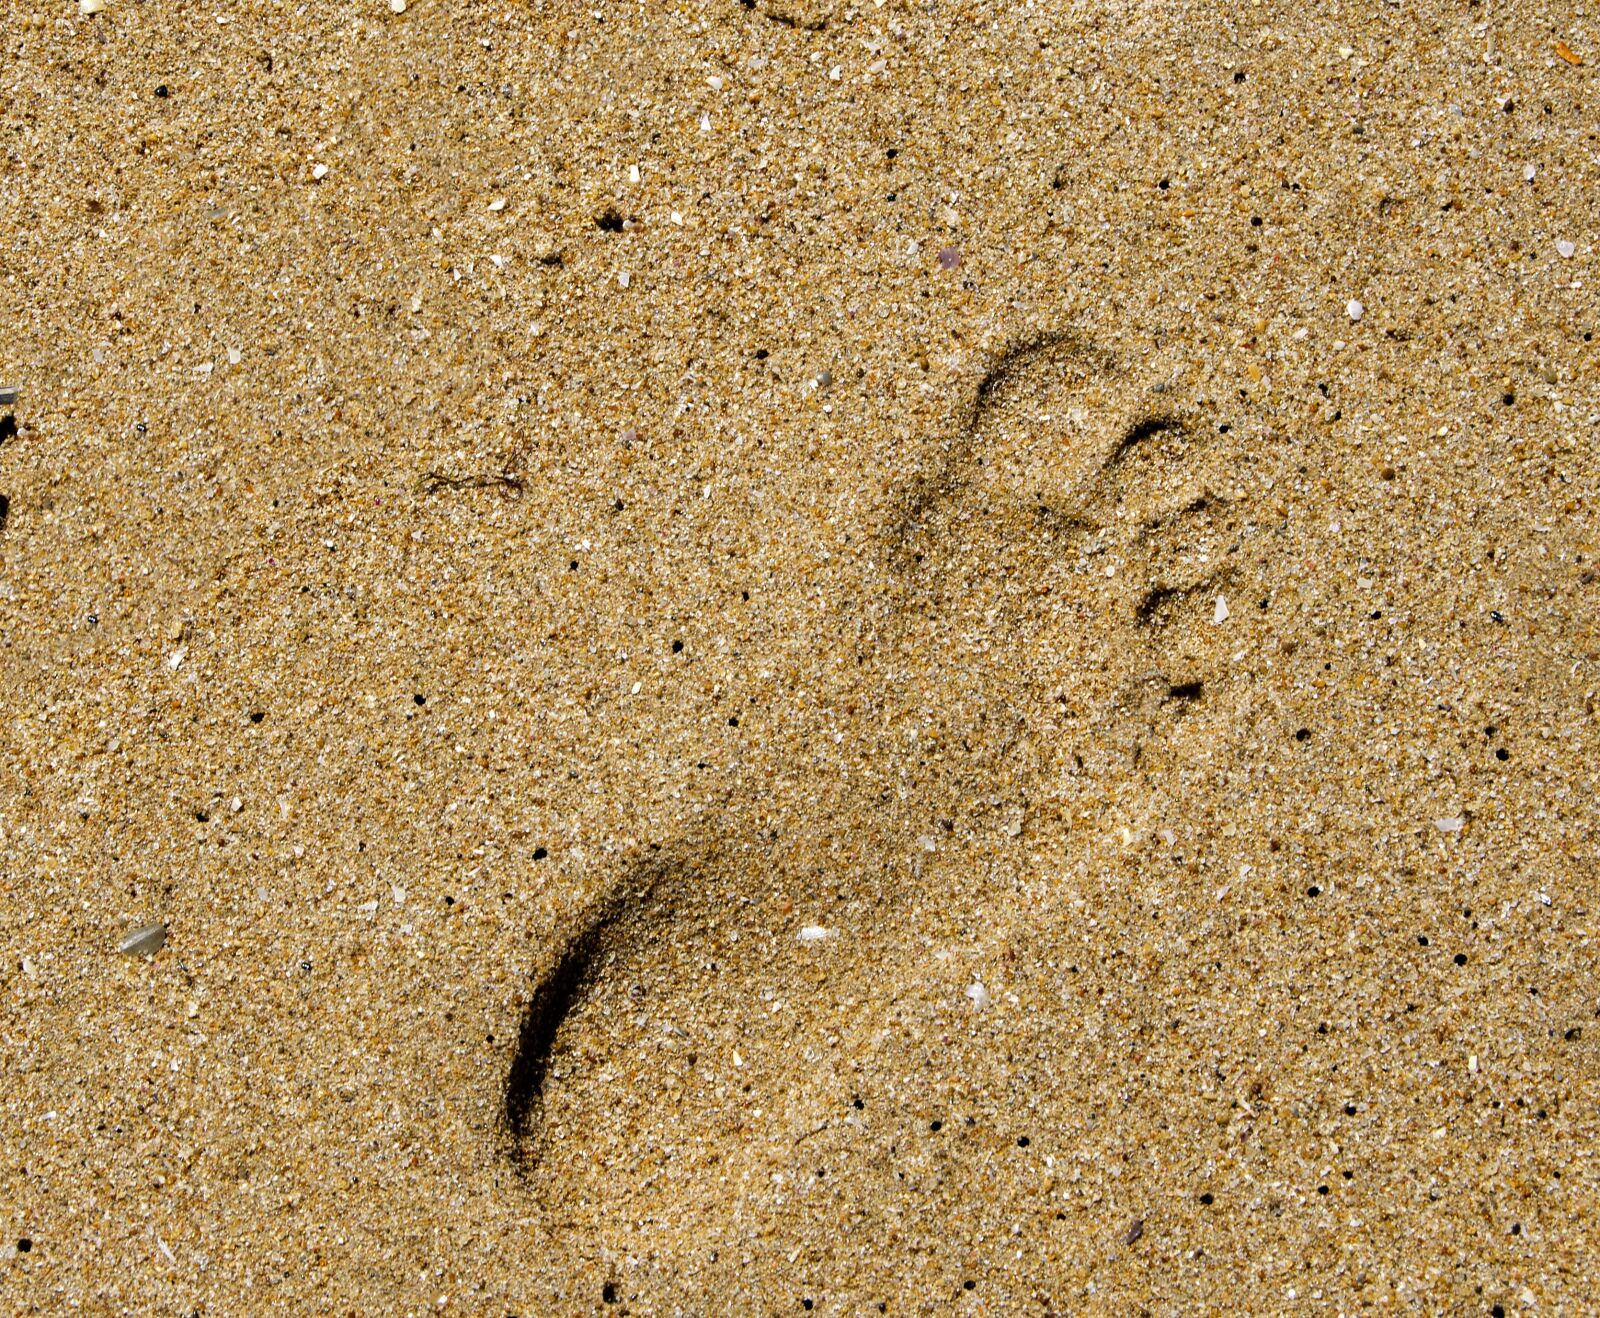 Nikon D5100 sample photo. Footprint, sand, beach photography